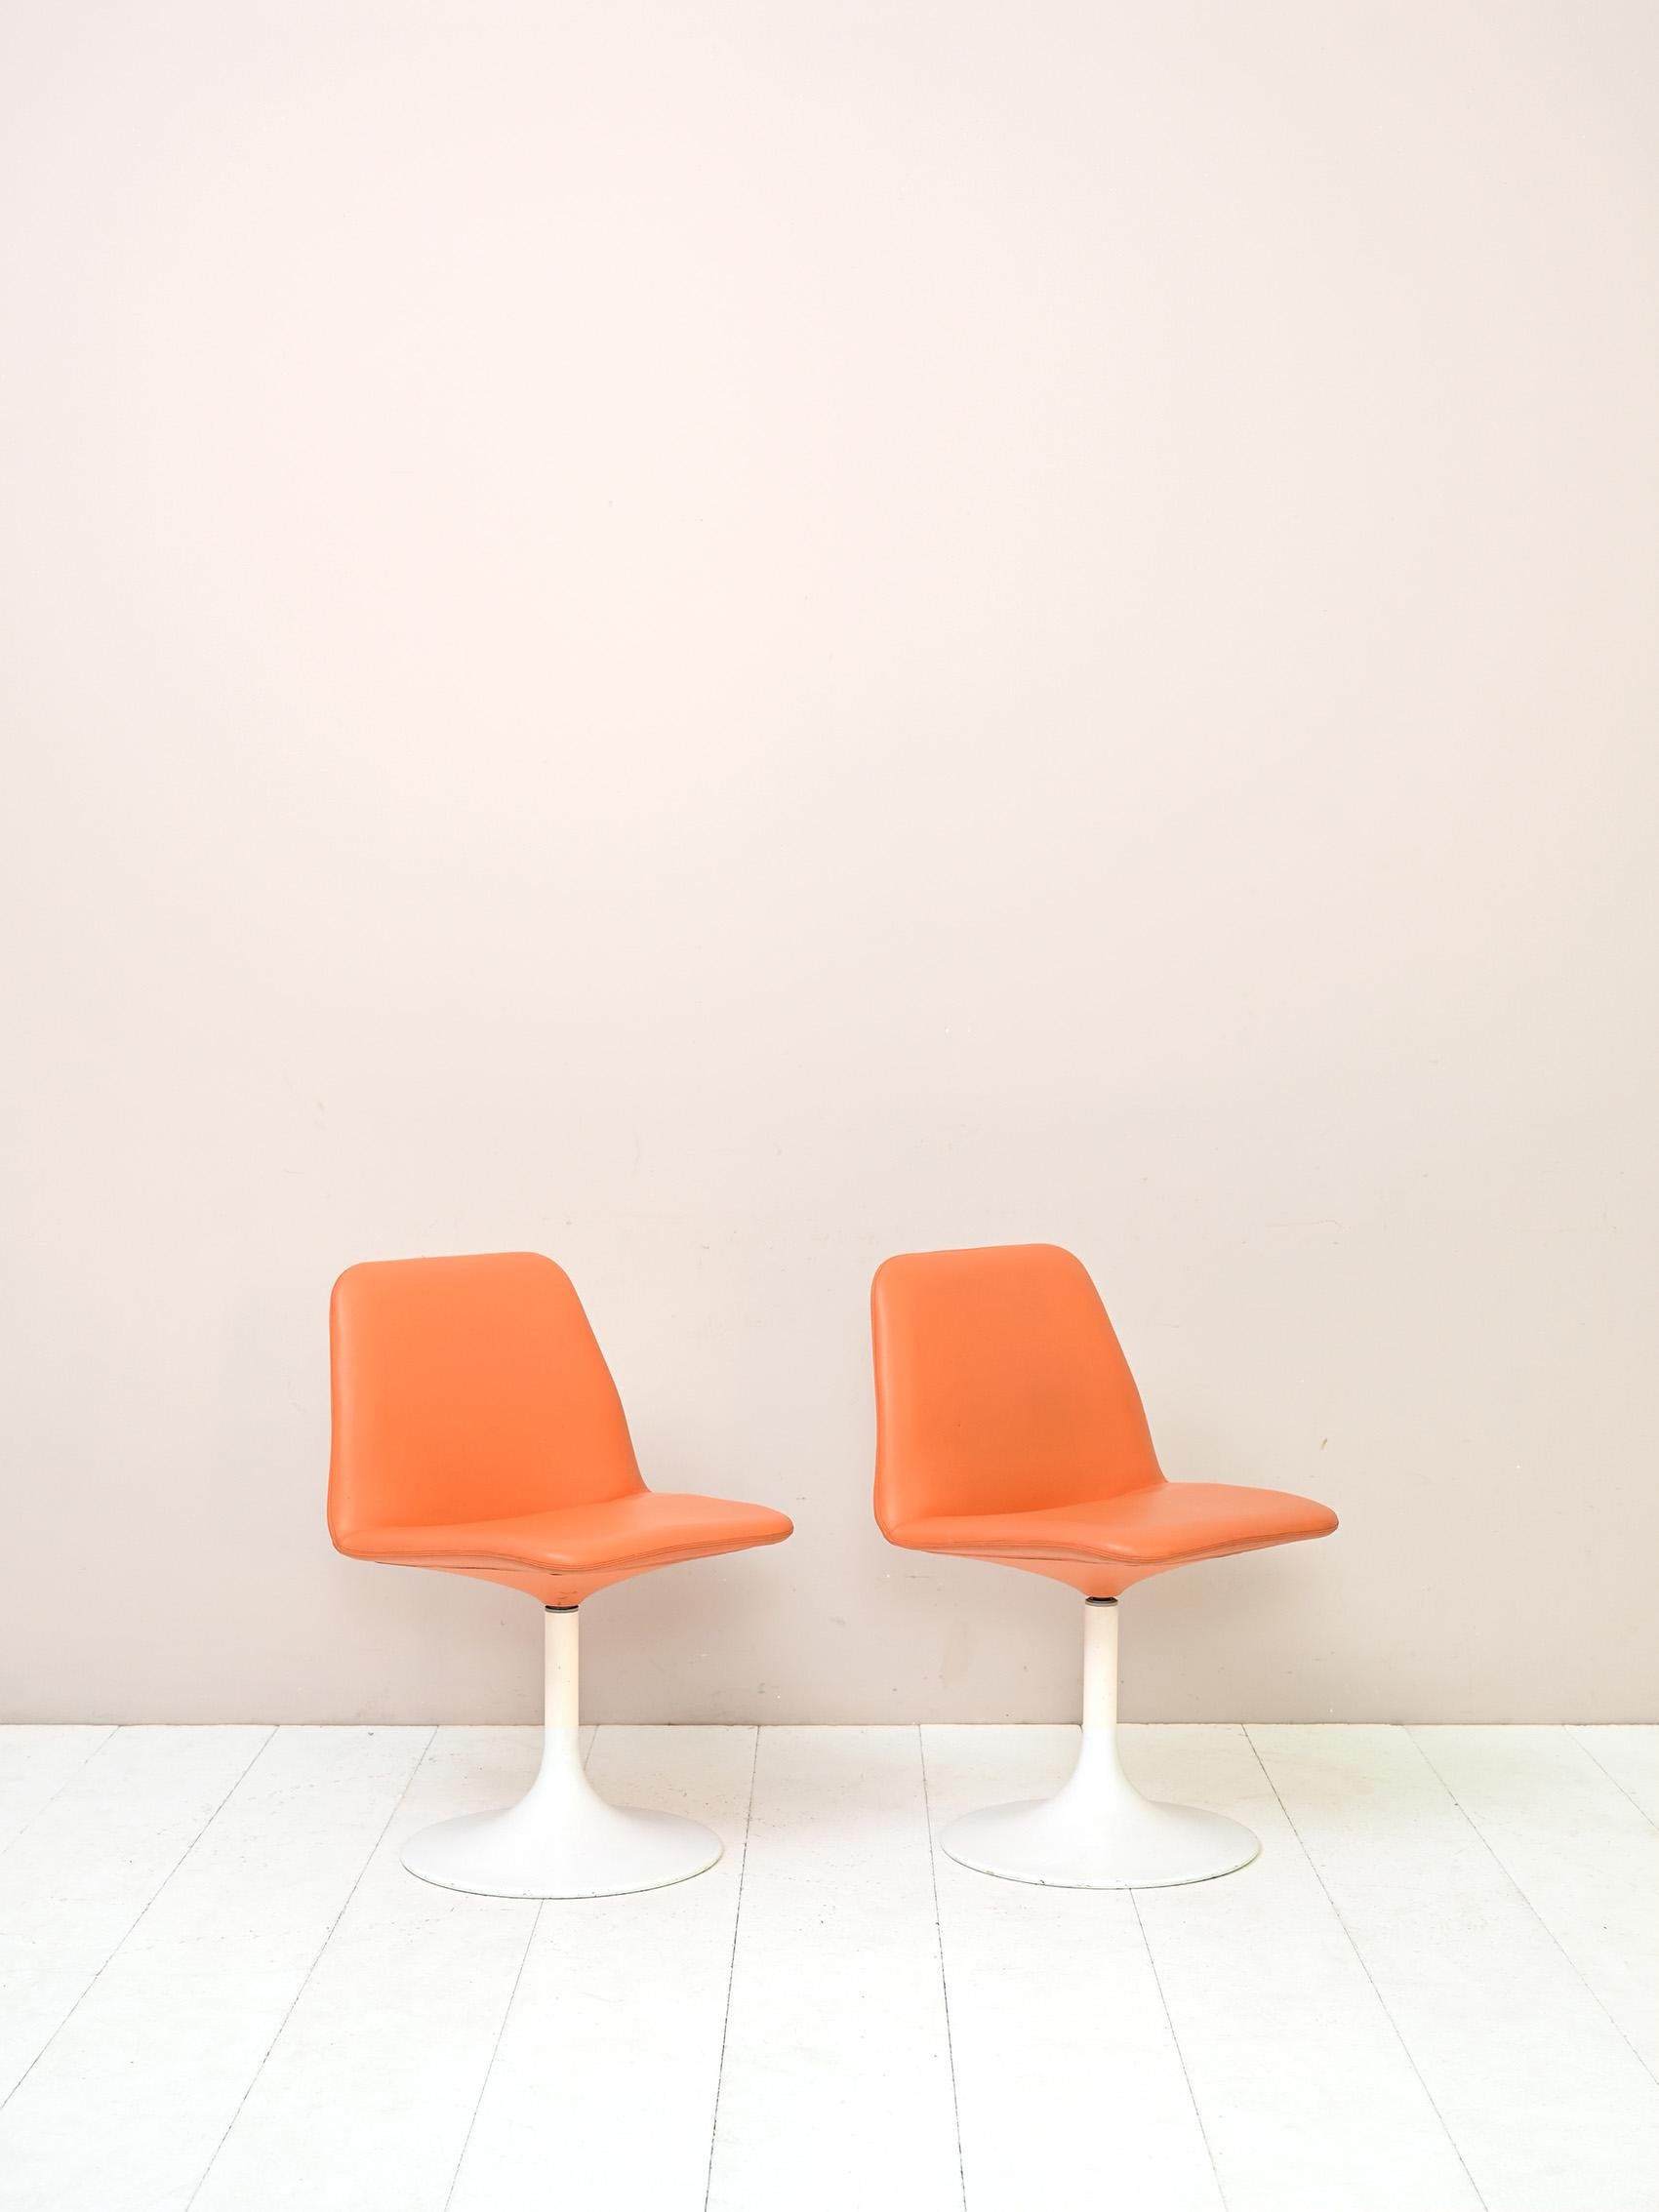 Zwei originale skandinavische Stühle im Vintage-Stil.

Diese modernen und originellen Stühle im Spaceage-Stil haben ein weißes Metallgestell, auf dem der gepolsterte, mit orangefarbenem Kunstleder bezogene Drehsitz aufliegt.
Ideal für das Büro oder